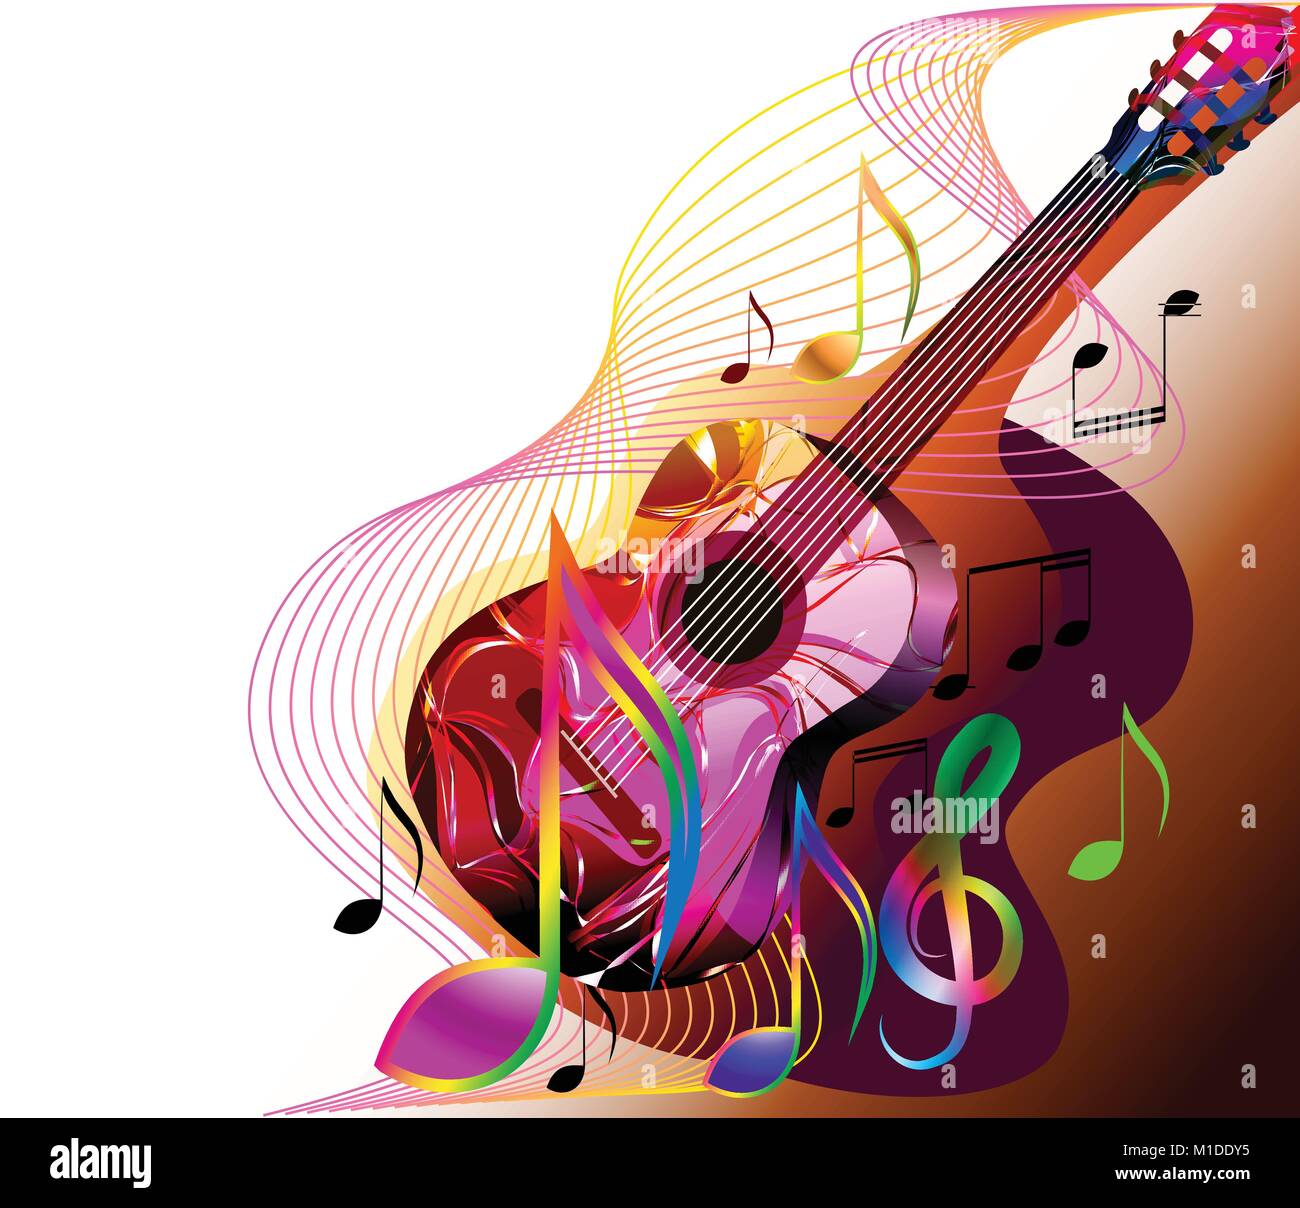 La musique colorée de fond avec la guitare et les notes de musique Image  Vectorielle Stock - Alamy